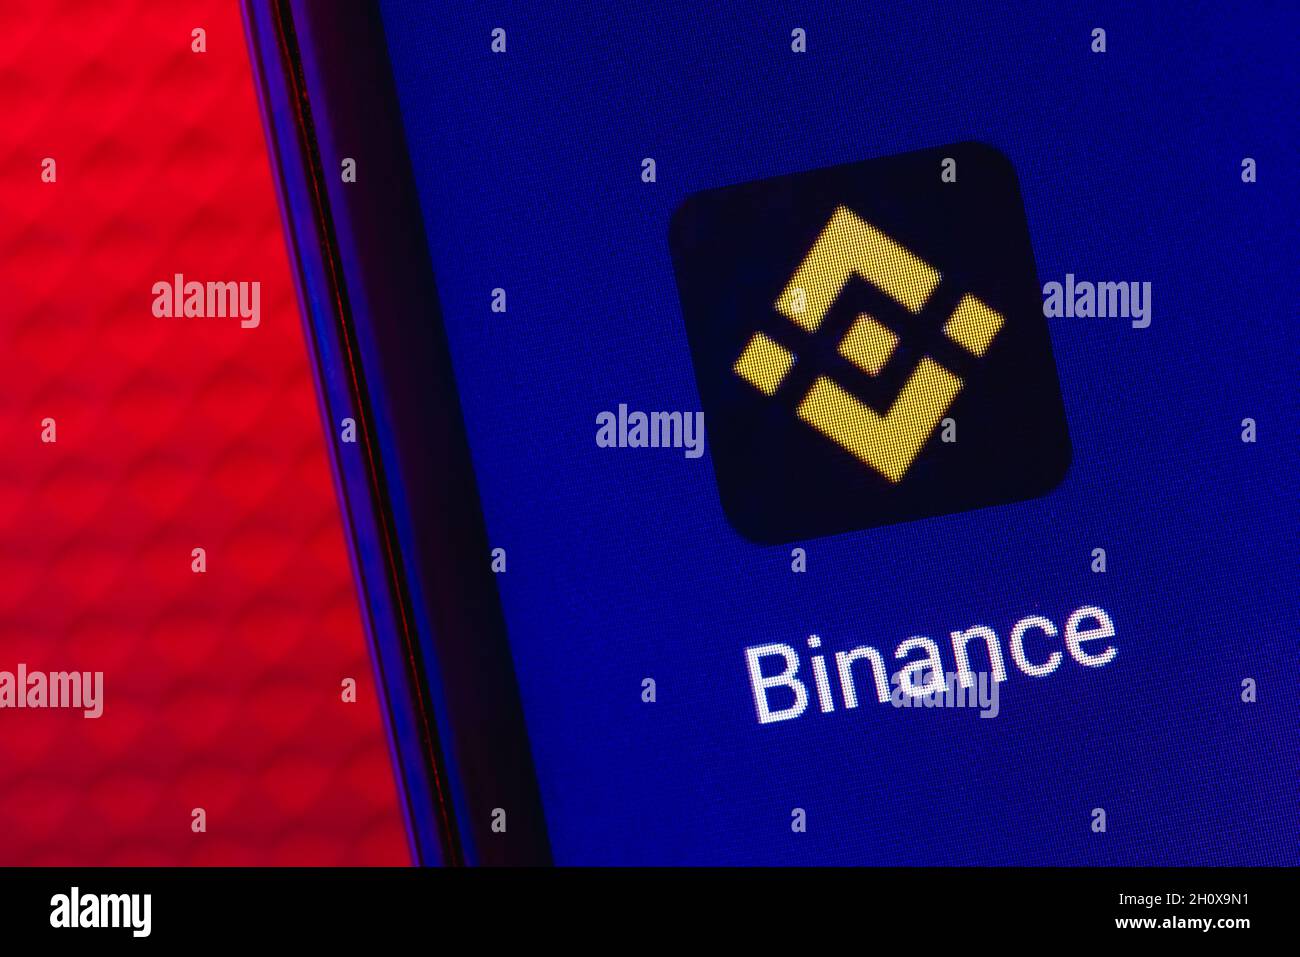 Binance ist eine Kryptowährungsbörse, die eine Plattform für den Handel mit verschiedenen Kryptowährungen bietet. Binance-App auf dem Smartphone-Bildschirm. Stockfoto